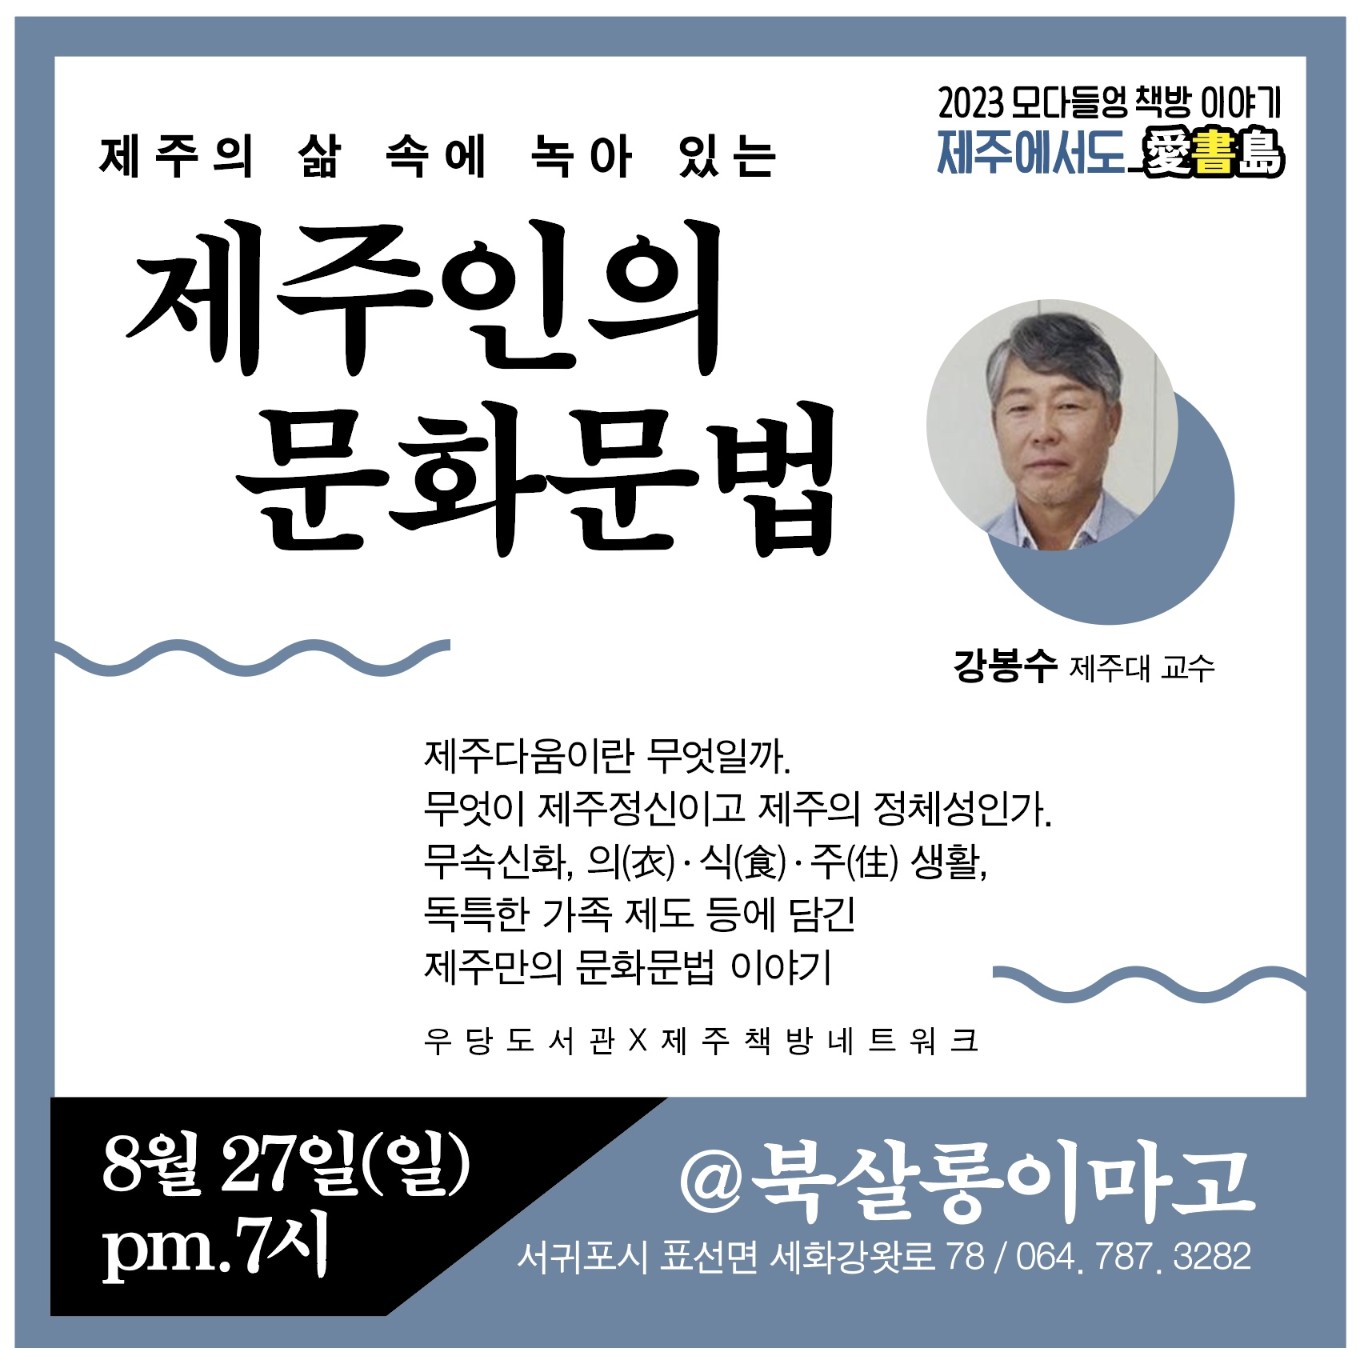 2023 모다들엉 책방 이야기 제주에서도- 북살롱이마고(제주인의 문화문법) 참여자 모집